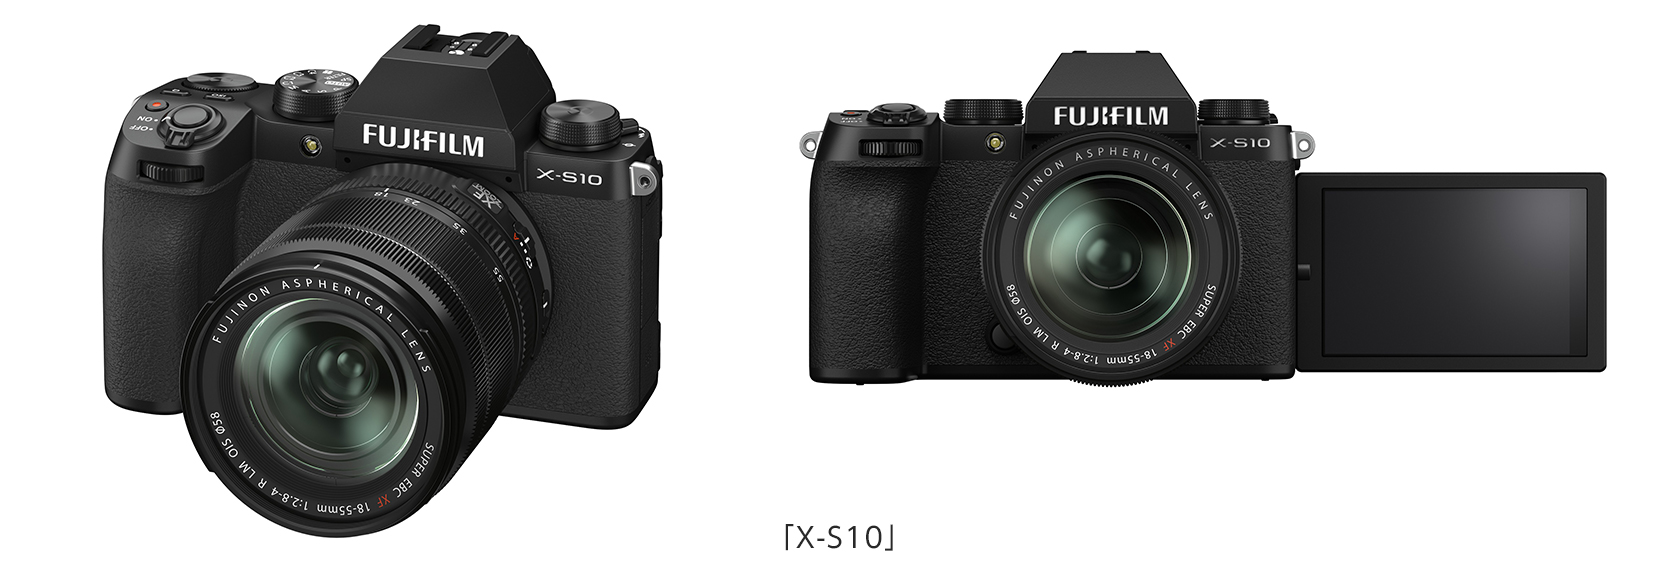 ミラーレスデジタルカメラ「FUJIFILM X-S10」新発売